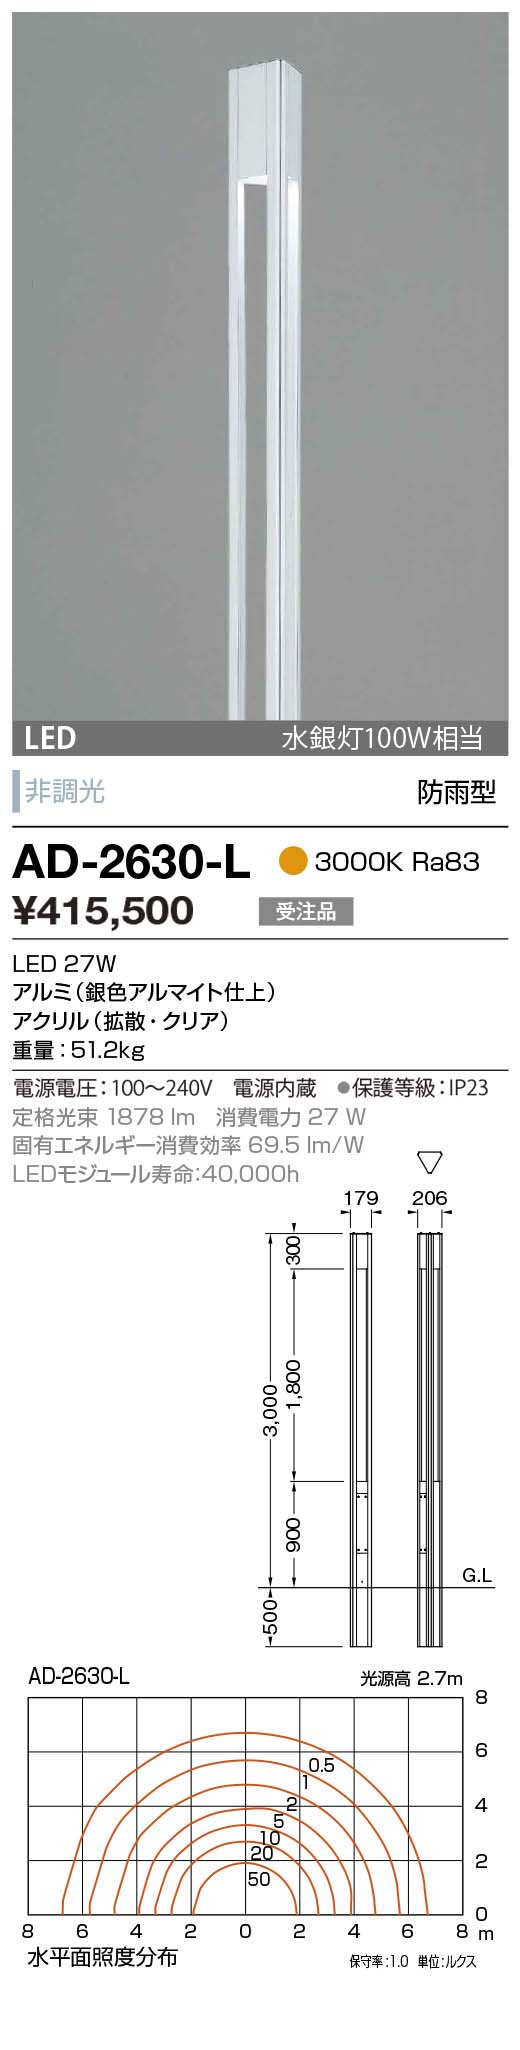 AD-2630-L